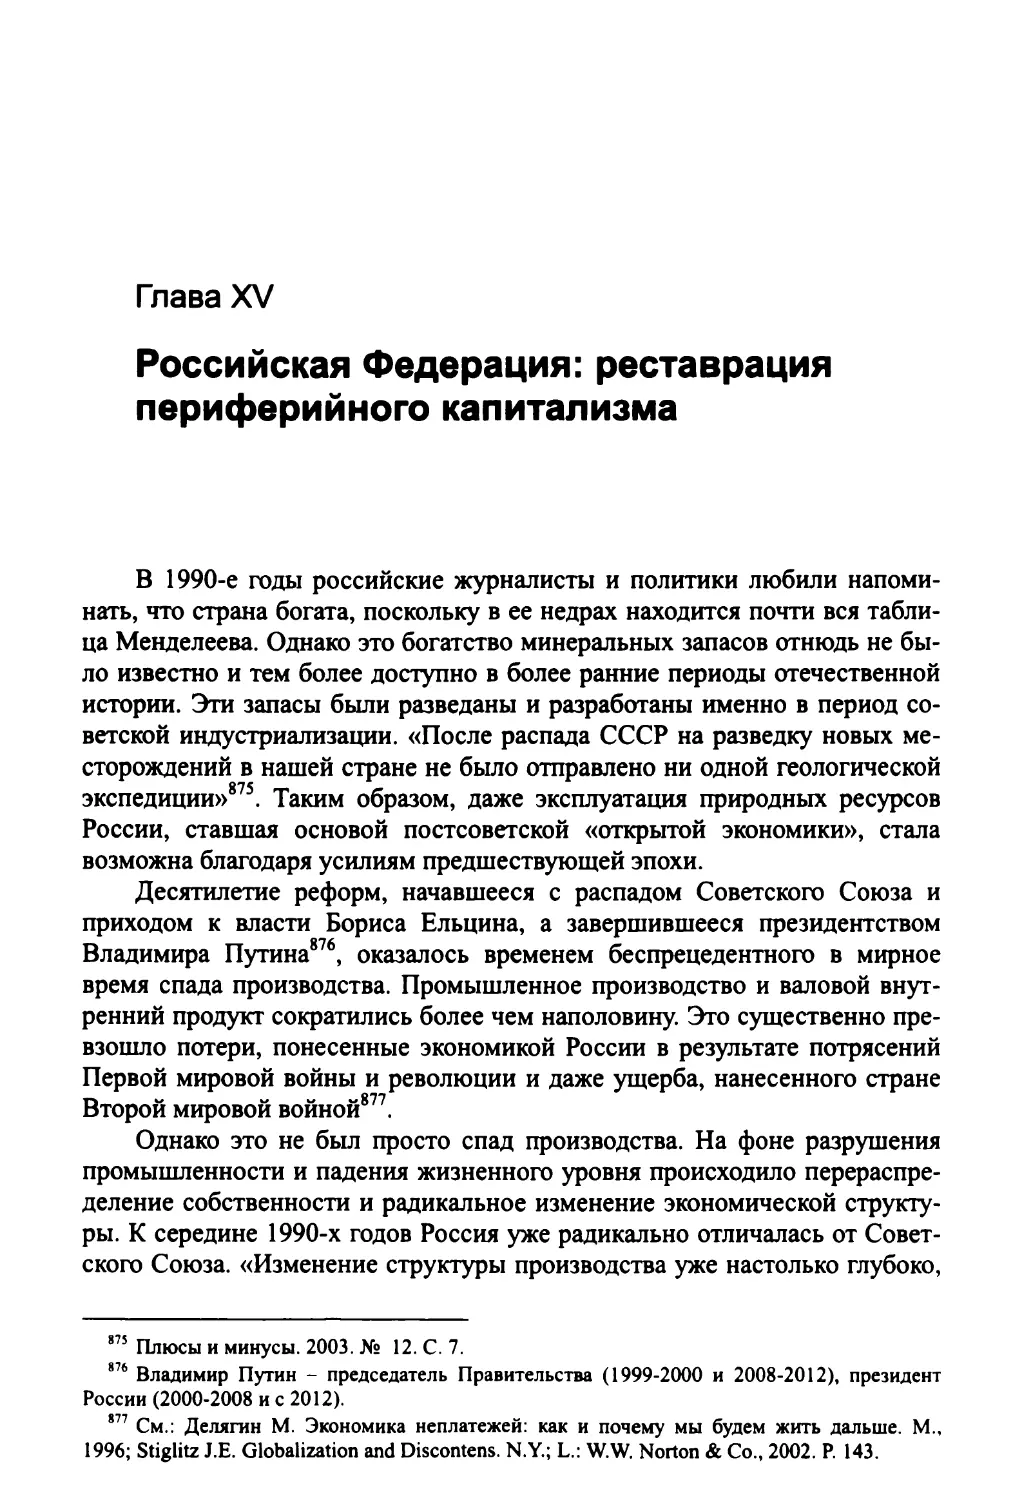 Глава XV. Российская Федерация: реставрация периферийного капитализма